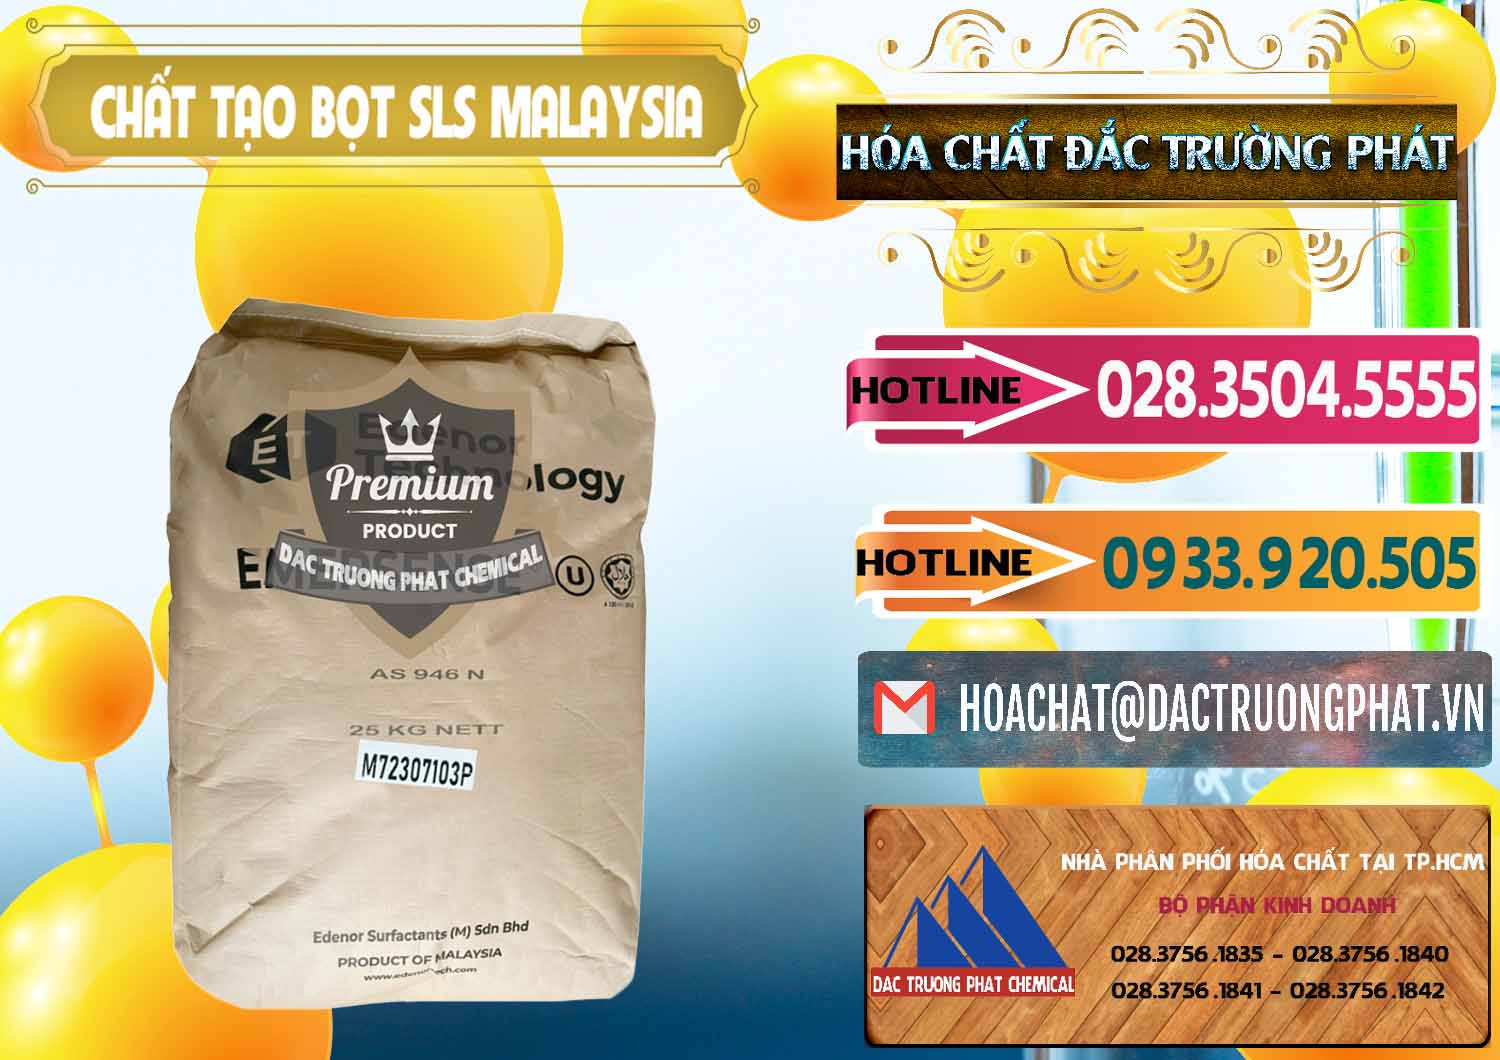 Kinh doanh _ bán Chất Tạo Bọt SLS Emersense Mã Lai Malaysia - 0381 - Cty bán & phân phối hóa chất tại TP.HCM - dactruongphat.vn